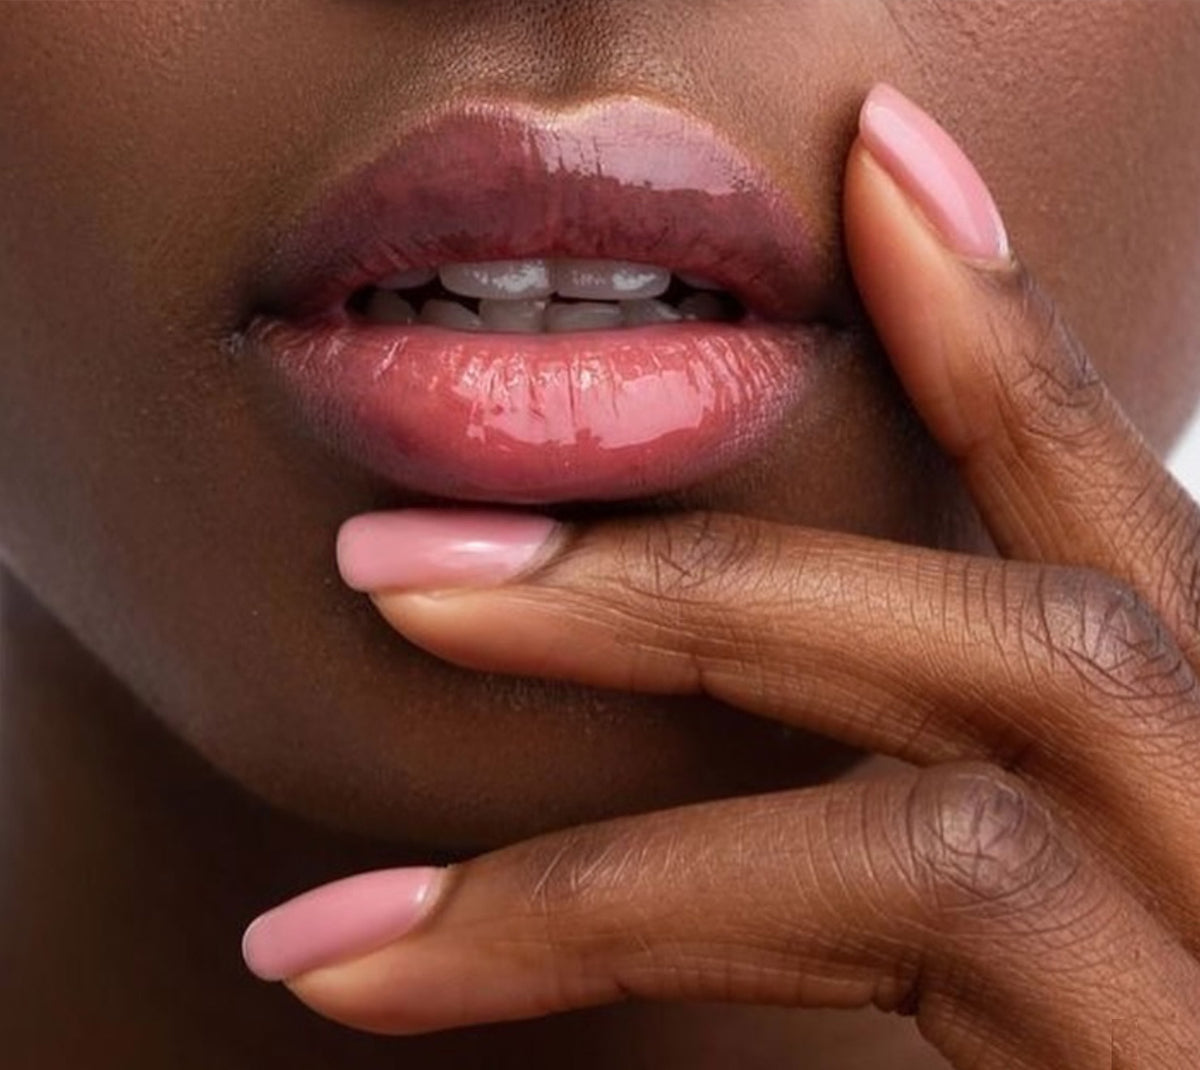 Lip treatment results at Nuage Beaty House's non-toxic beauty bar